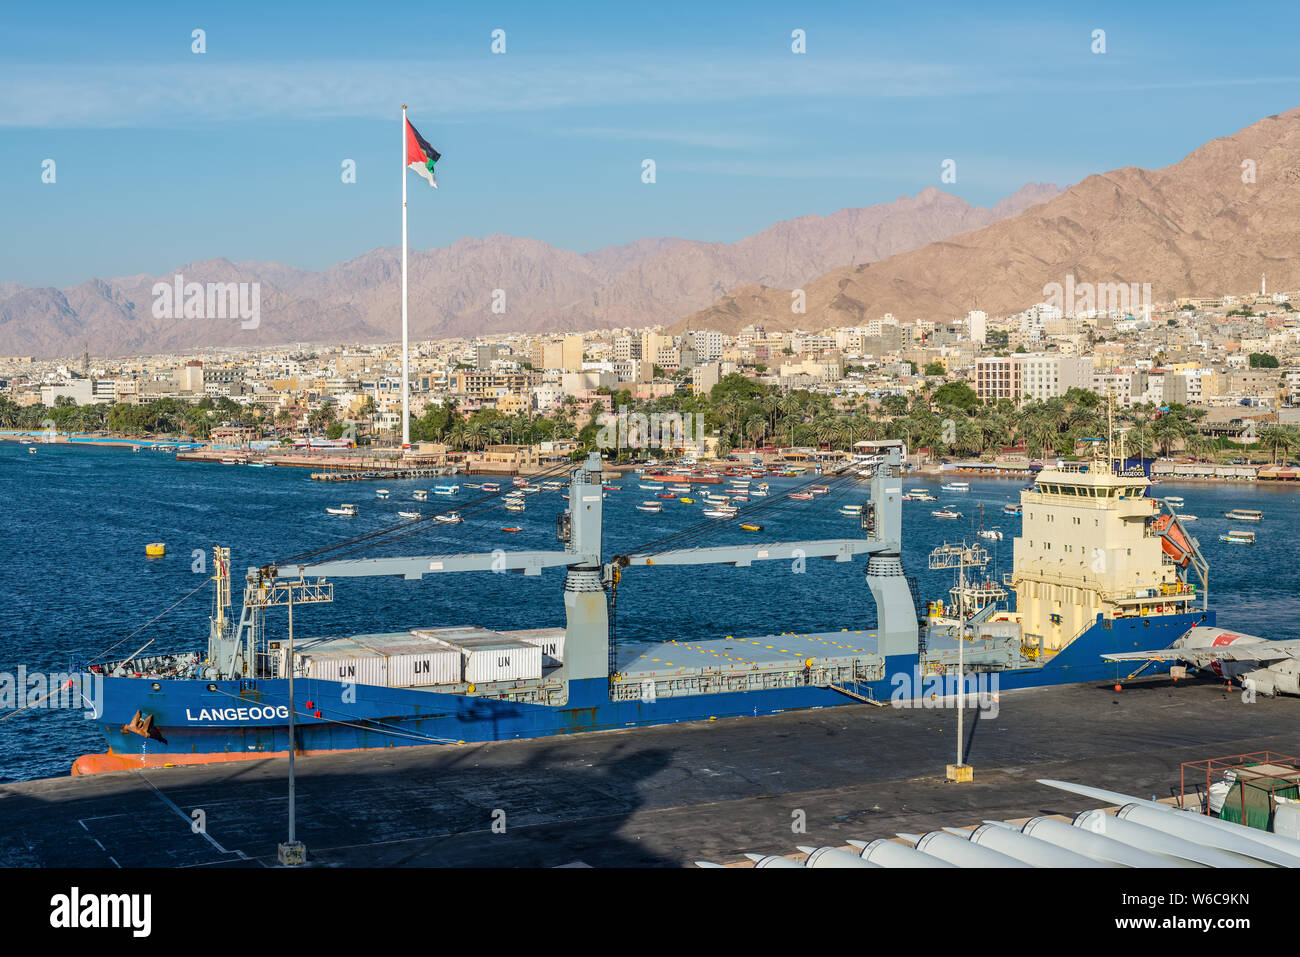 Aqaba Giordania - 6 Novembre 2017: Cityscape di Aqaba. Nave da carico generale Langeoog ormeggiata nel porto di Aqaba Giordania. Foto Stock